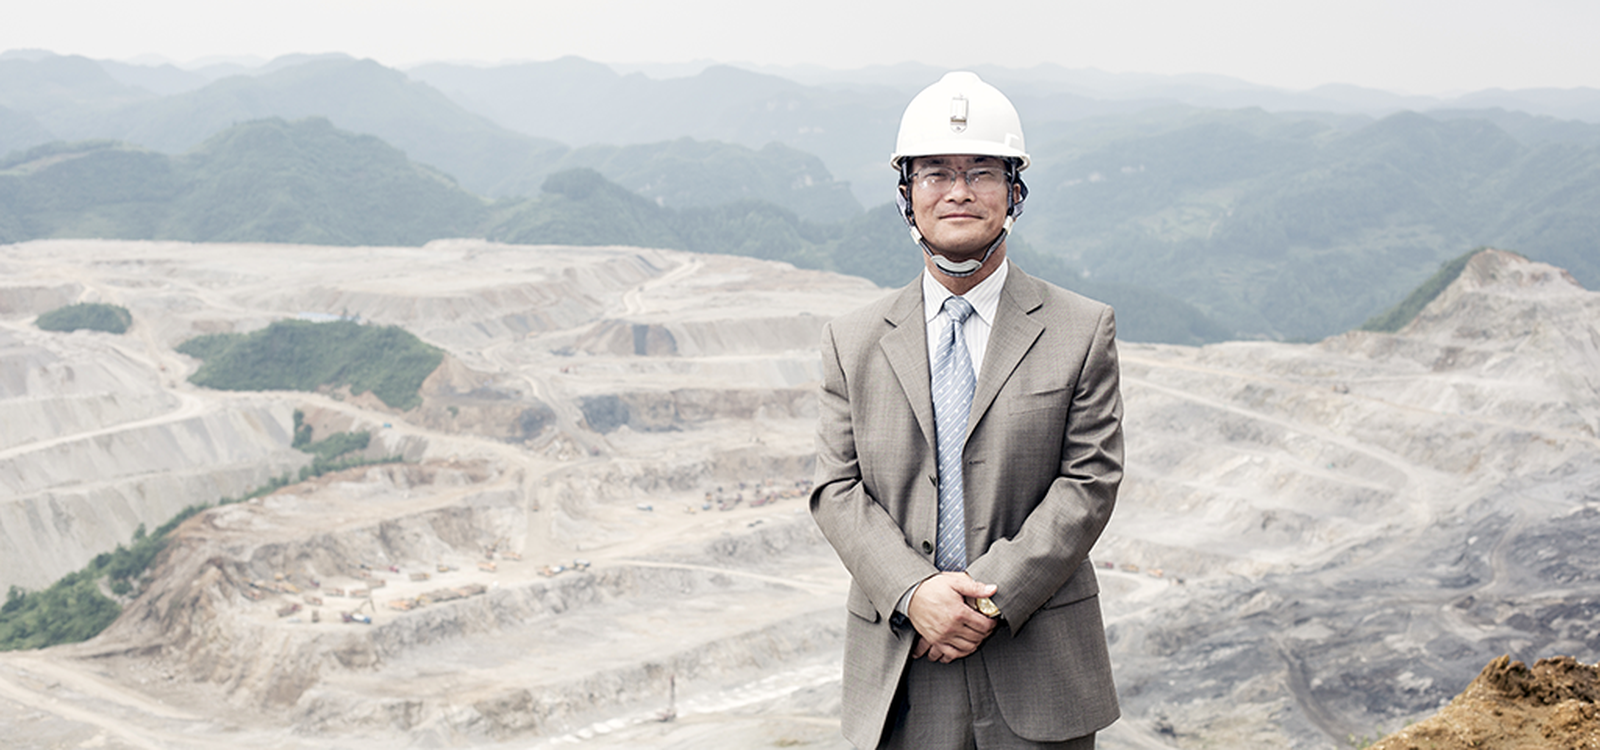 <p>Le président de New Orion Drilling, Luo Qingzin, sait la valeur ajoutée que les équipements Sandvik apportent à l’exploitation du minerai de phosphate.</p>
